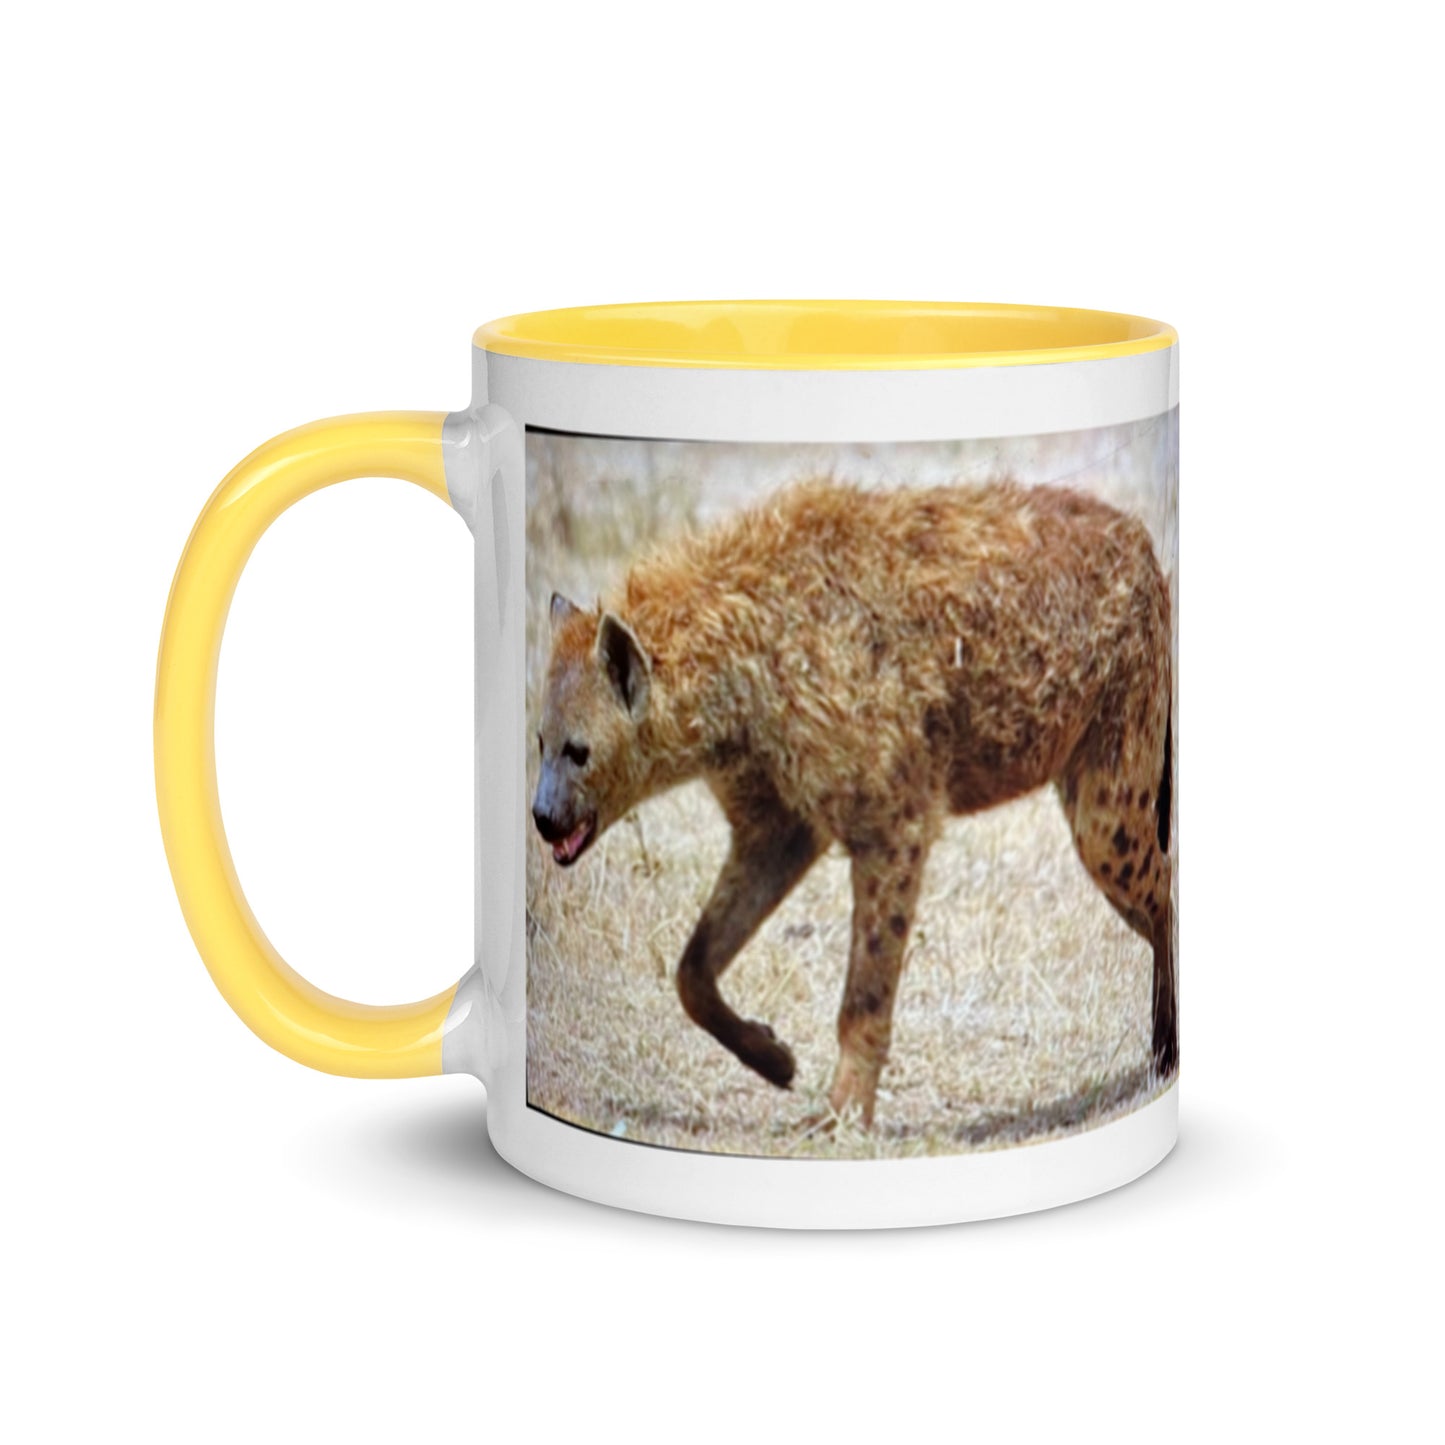 1 Kenya Critters Mug with Color Inside